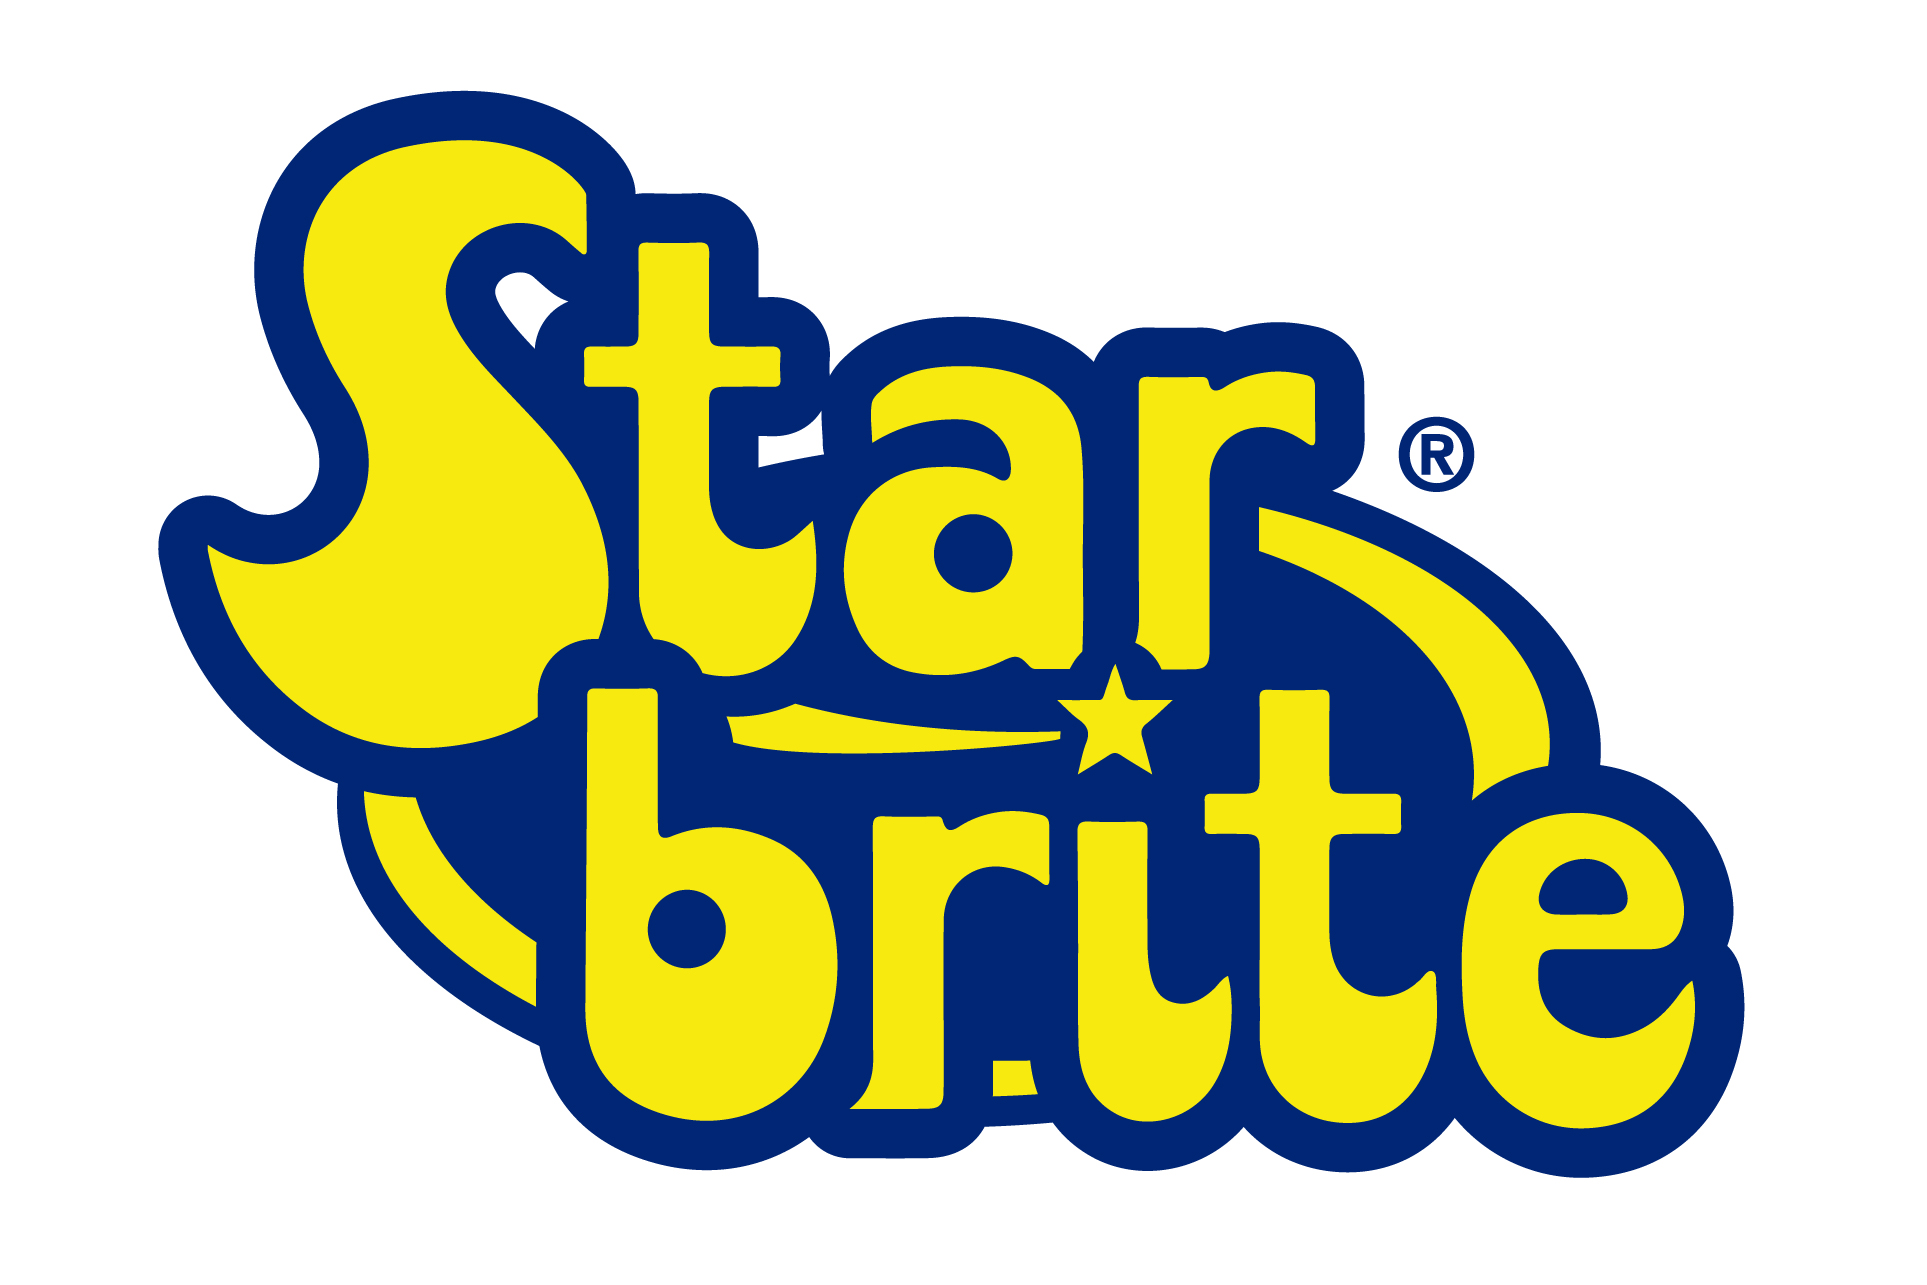 Starbrite logo